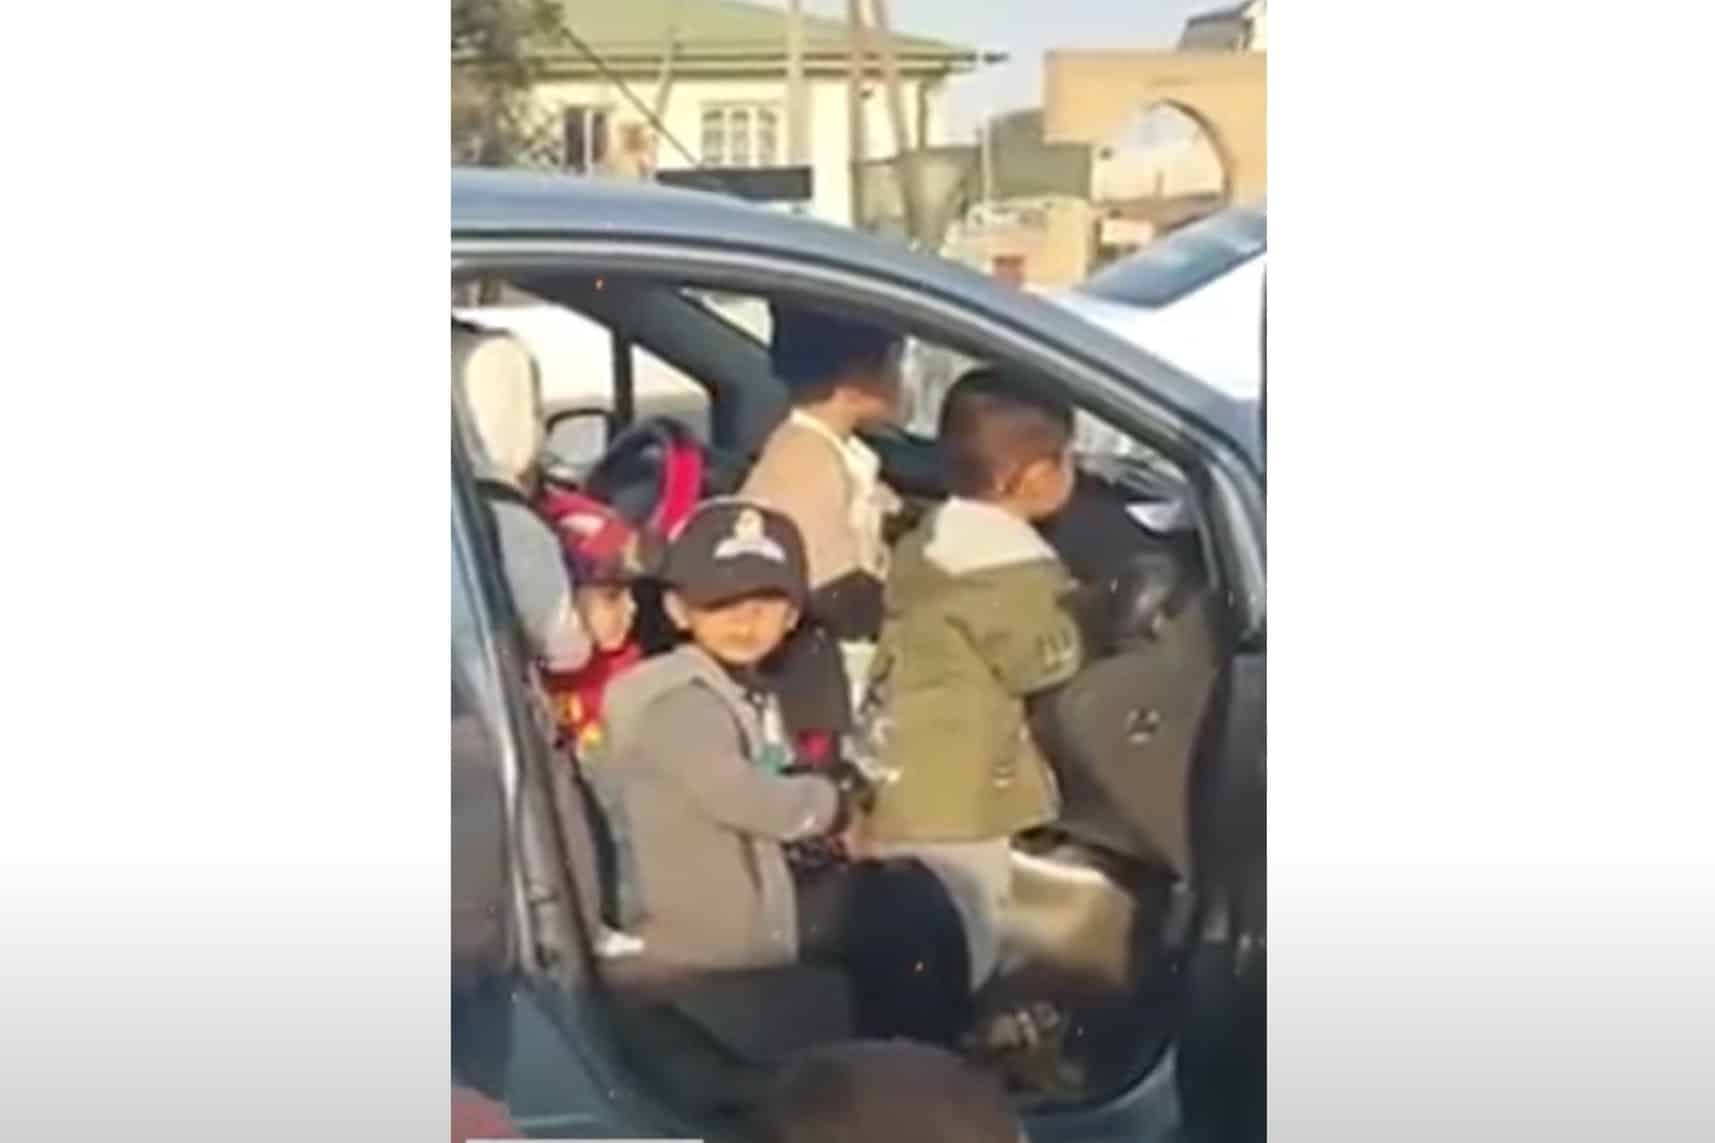 Maestra d’asilo fermata con 25 bambini a bordo dell’auto [VIDEO]